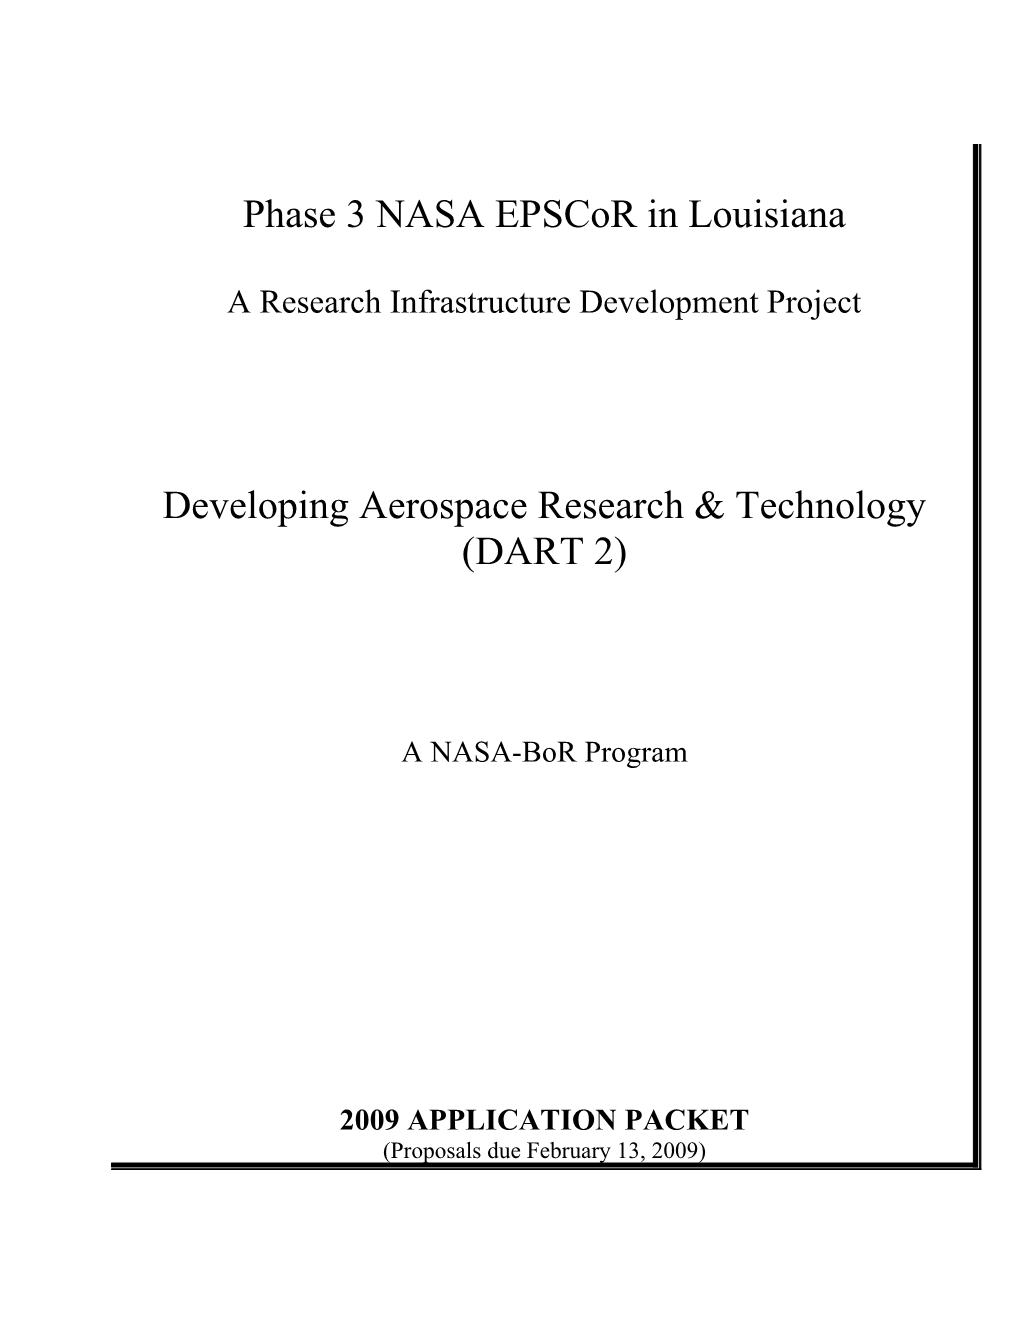 NASA Epscor Phase 3